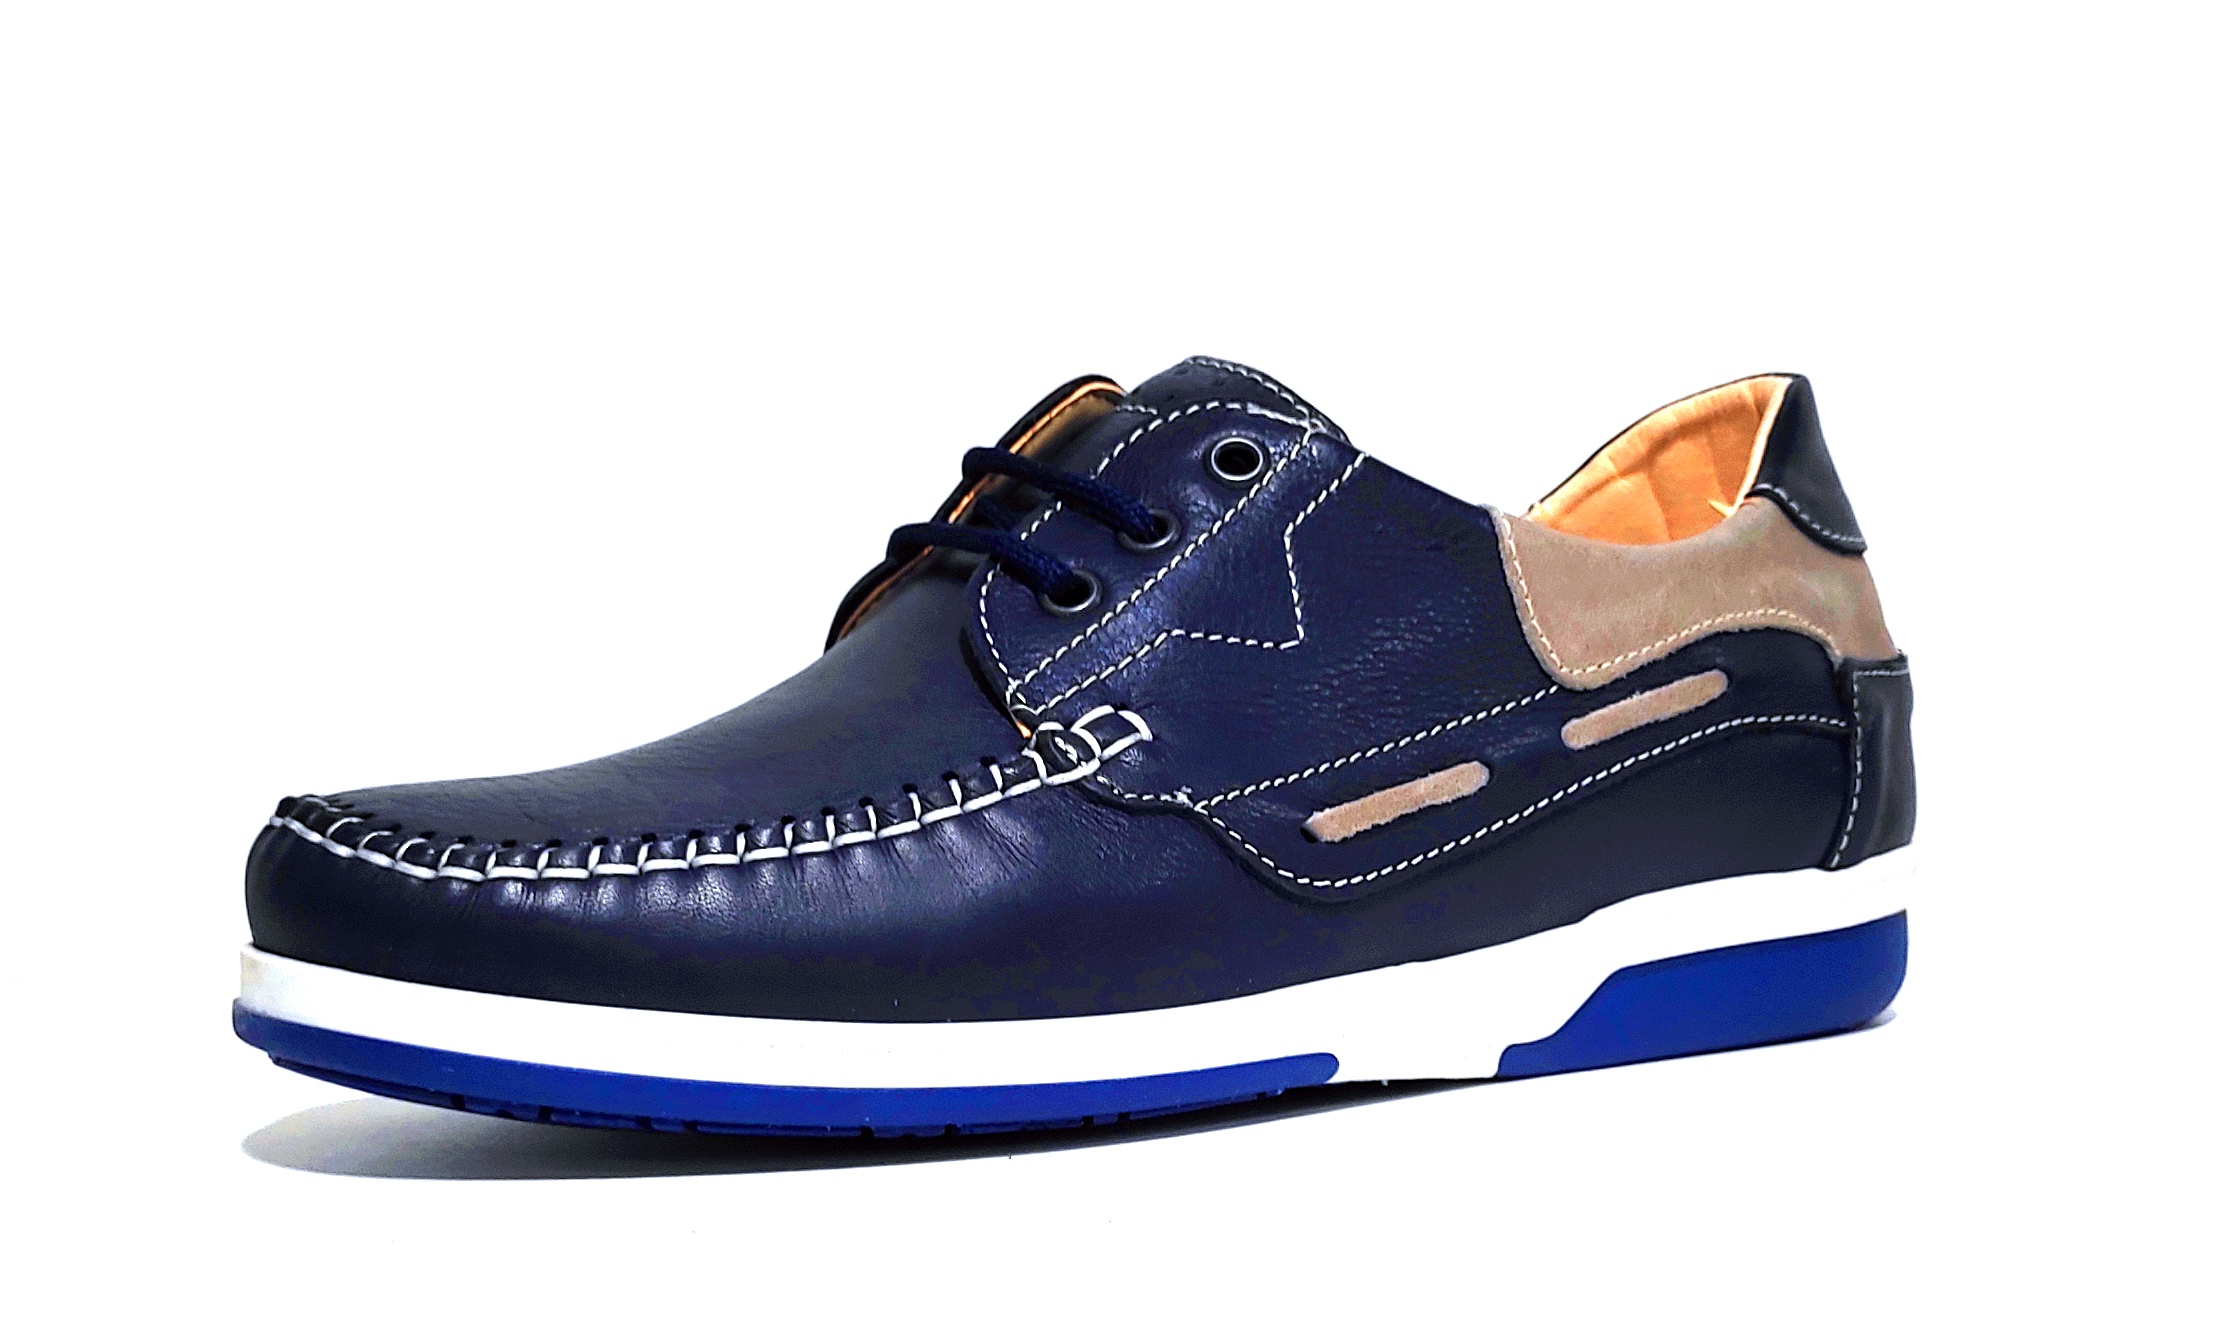 pronto moda crispino 410 scarpa blu vera pelle allacciata uomo estate scarpe mad - Foto 1 di 1